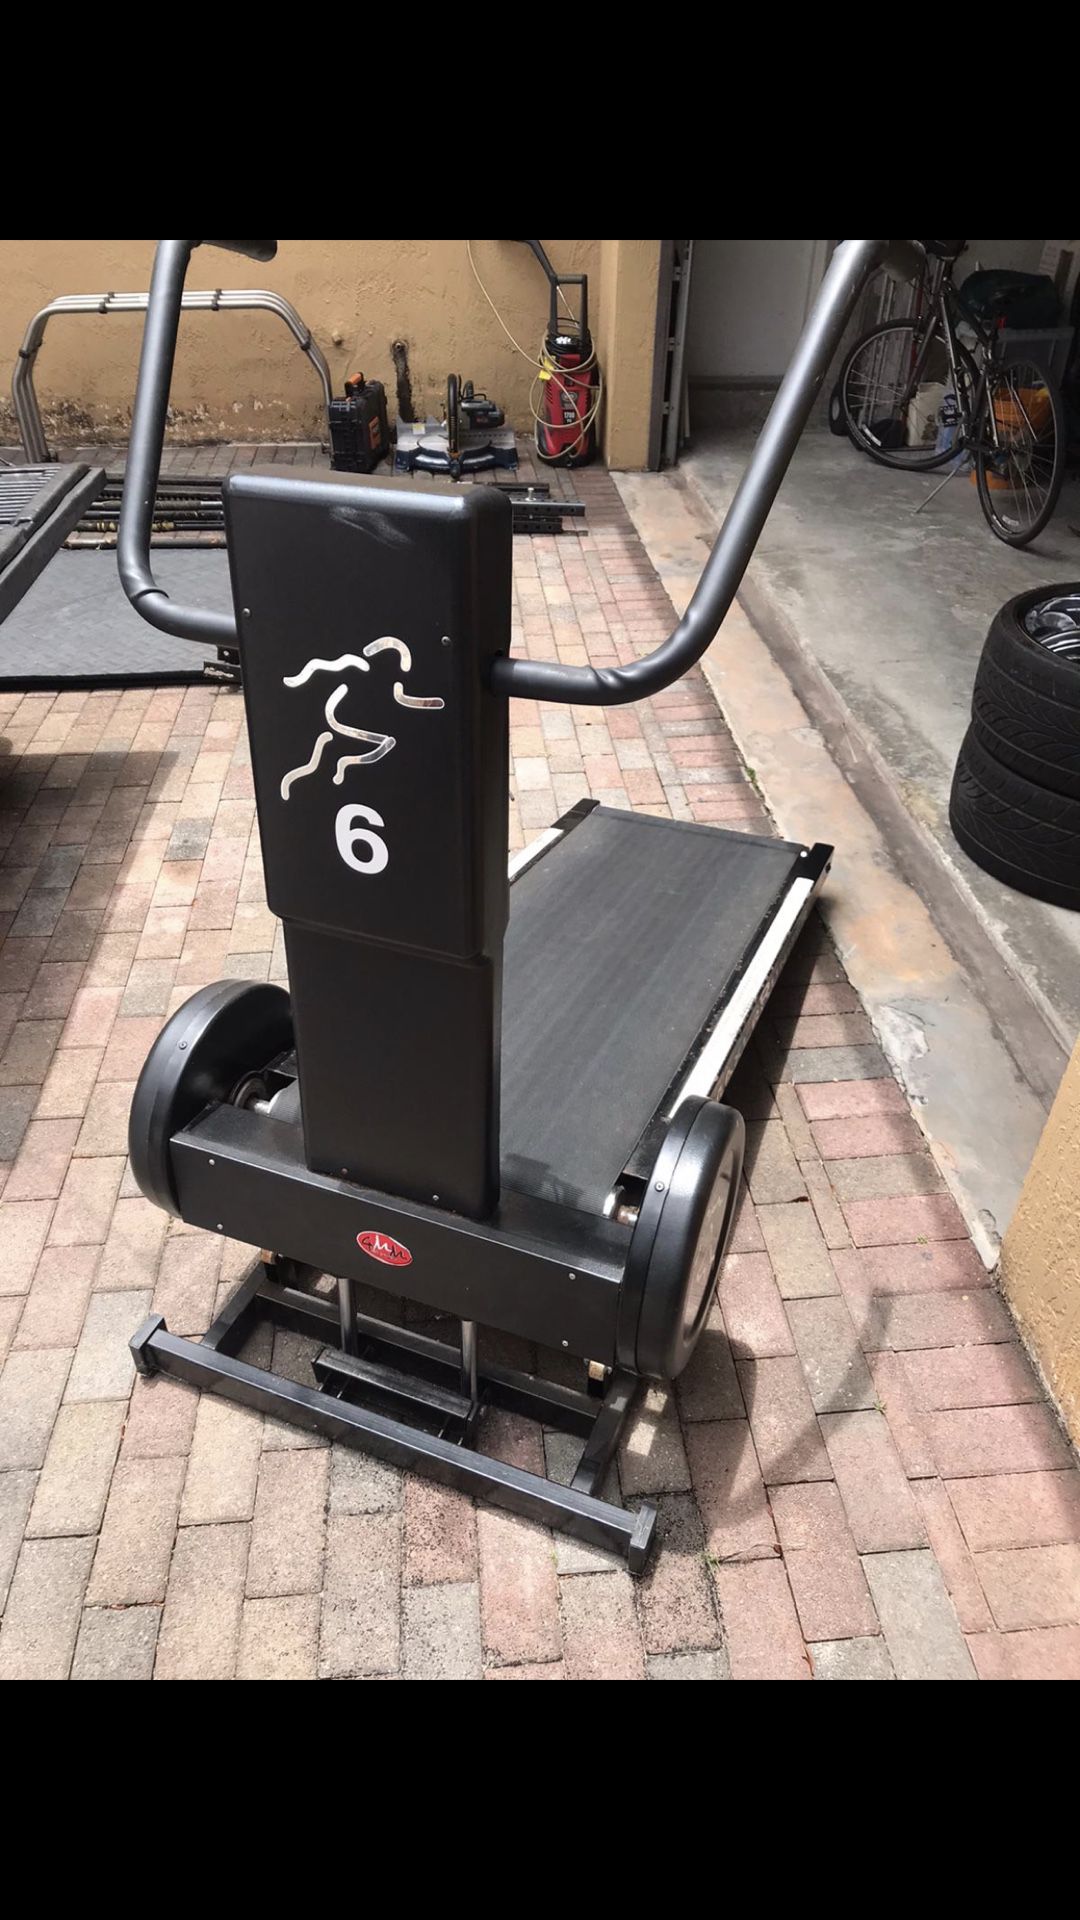 MaxerRunner treadmill Profesional Athletes Machine